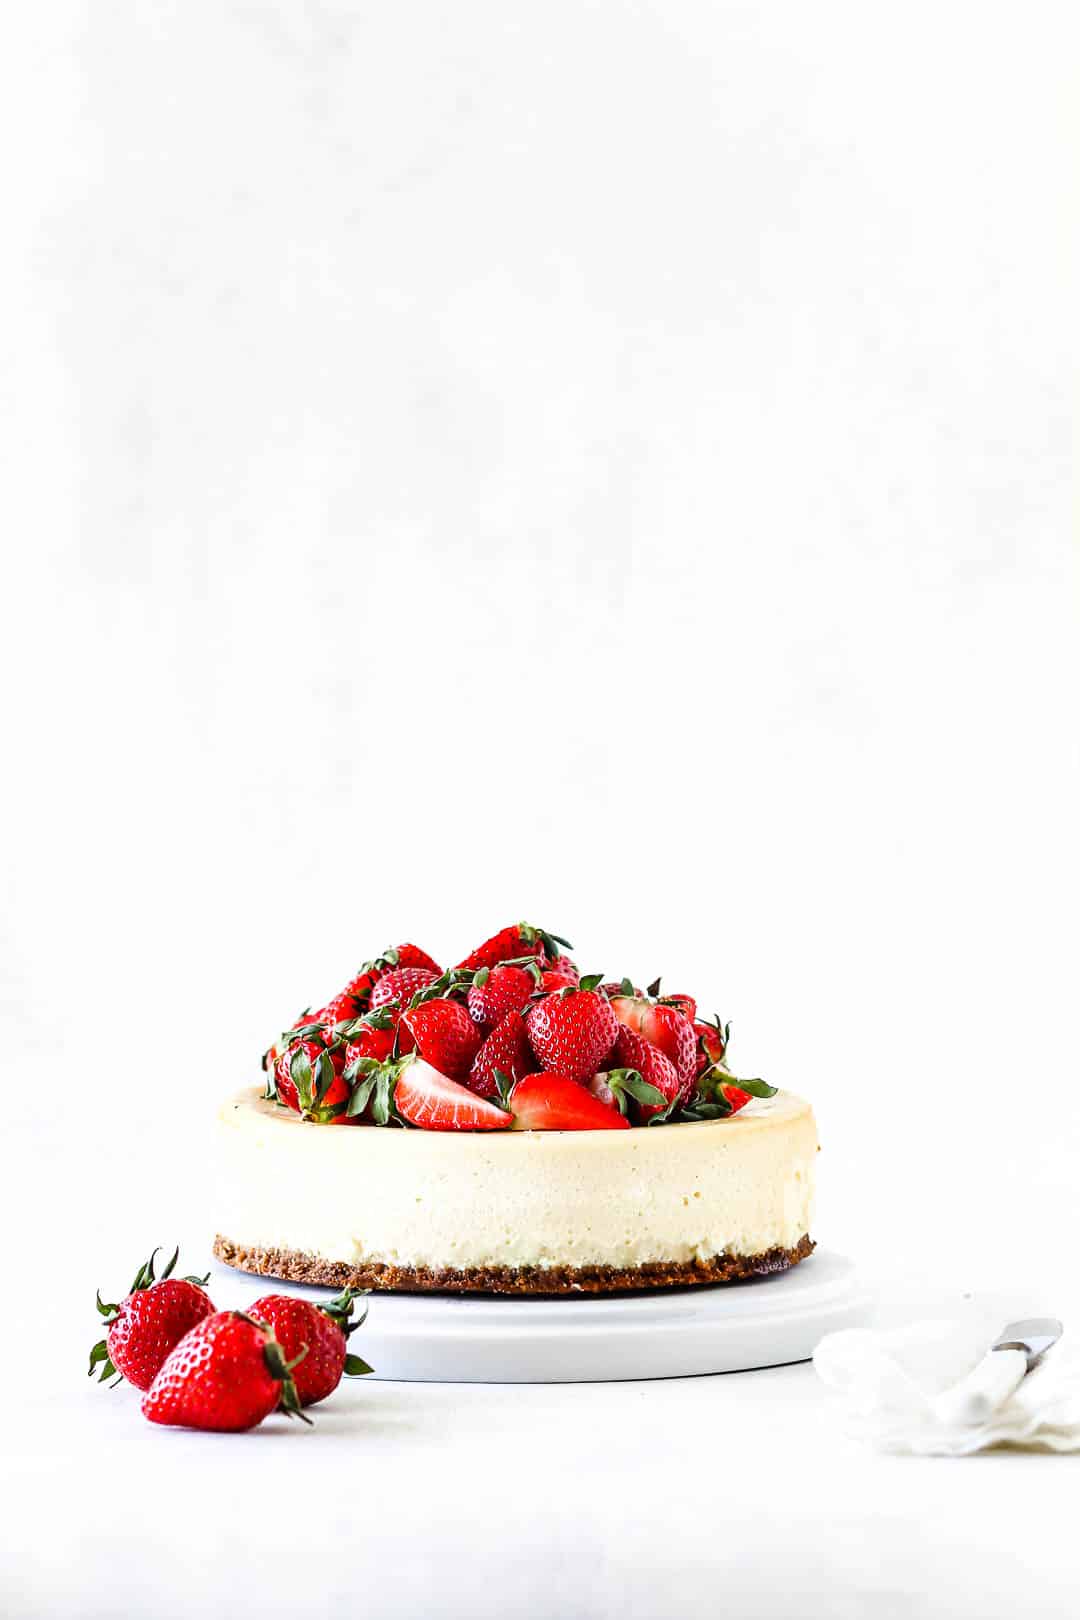 Cheesecake med jordbær - opskrift på nem cheesecake med bær